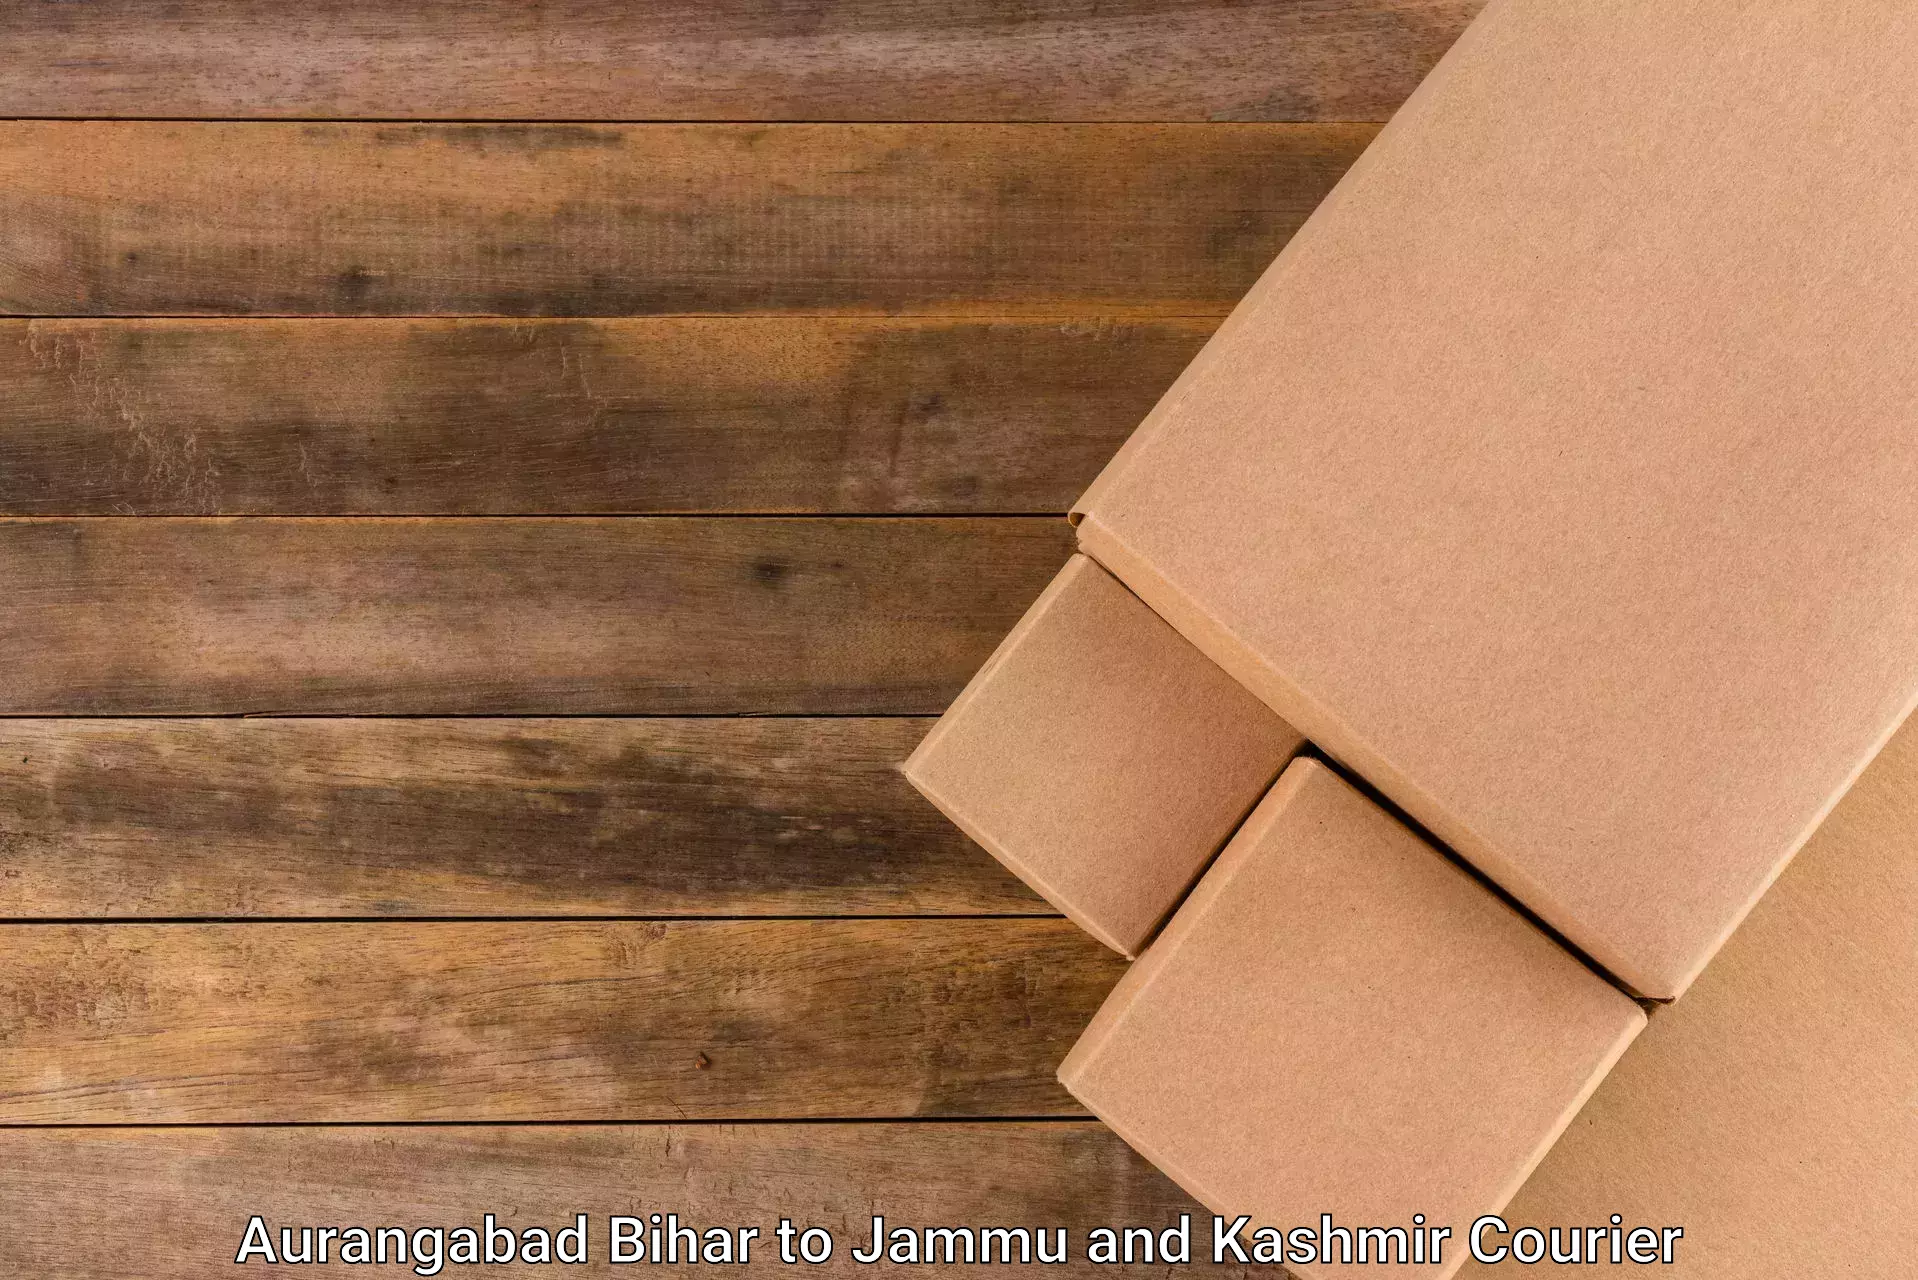 International courier rates Aurangabad Bihar to Jammu and Kashmir